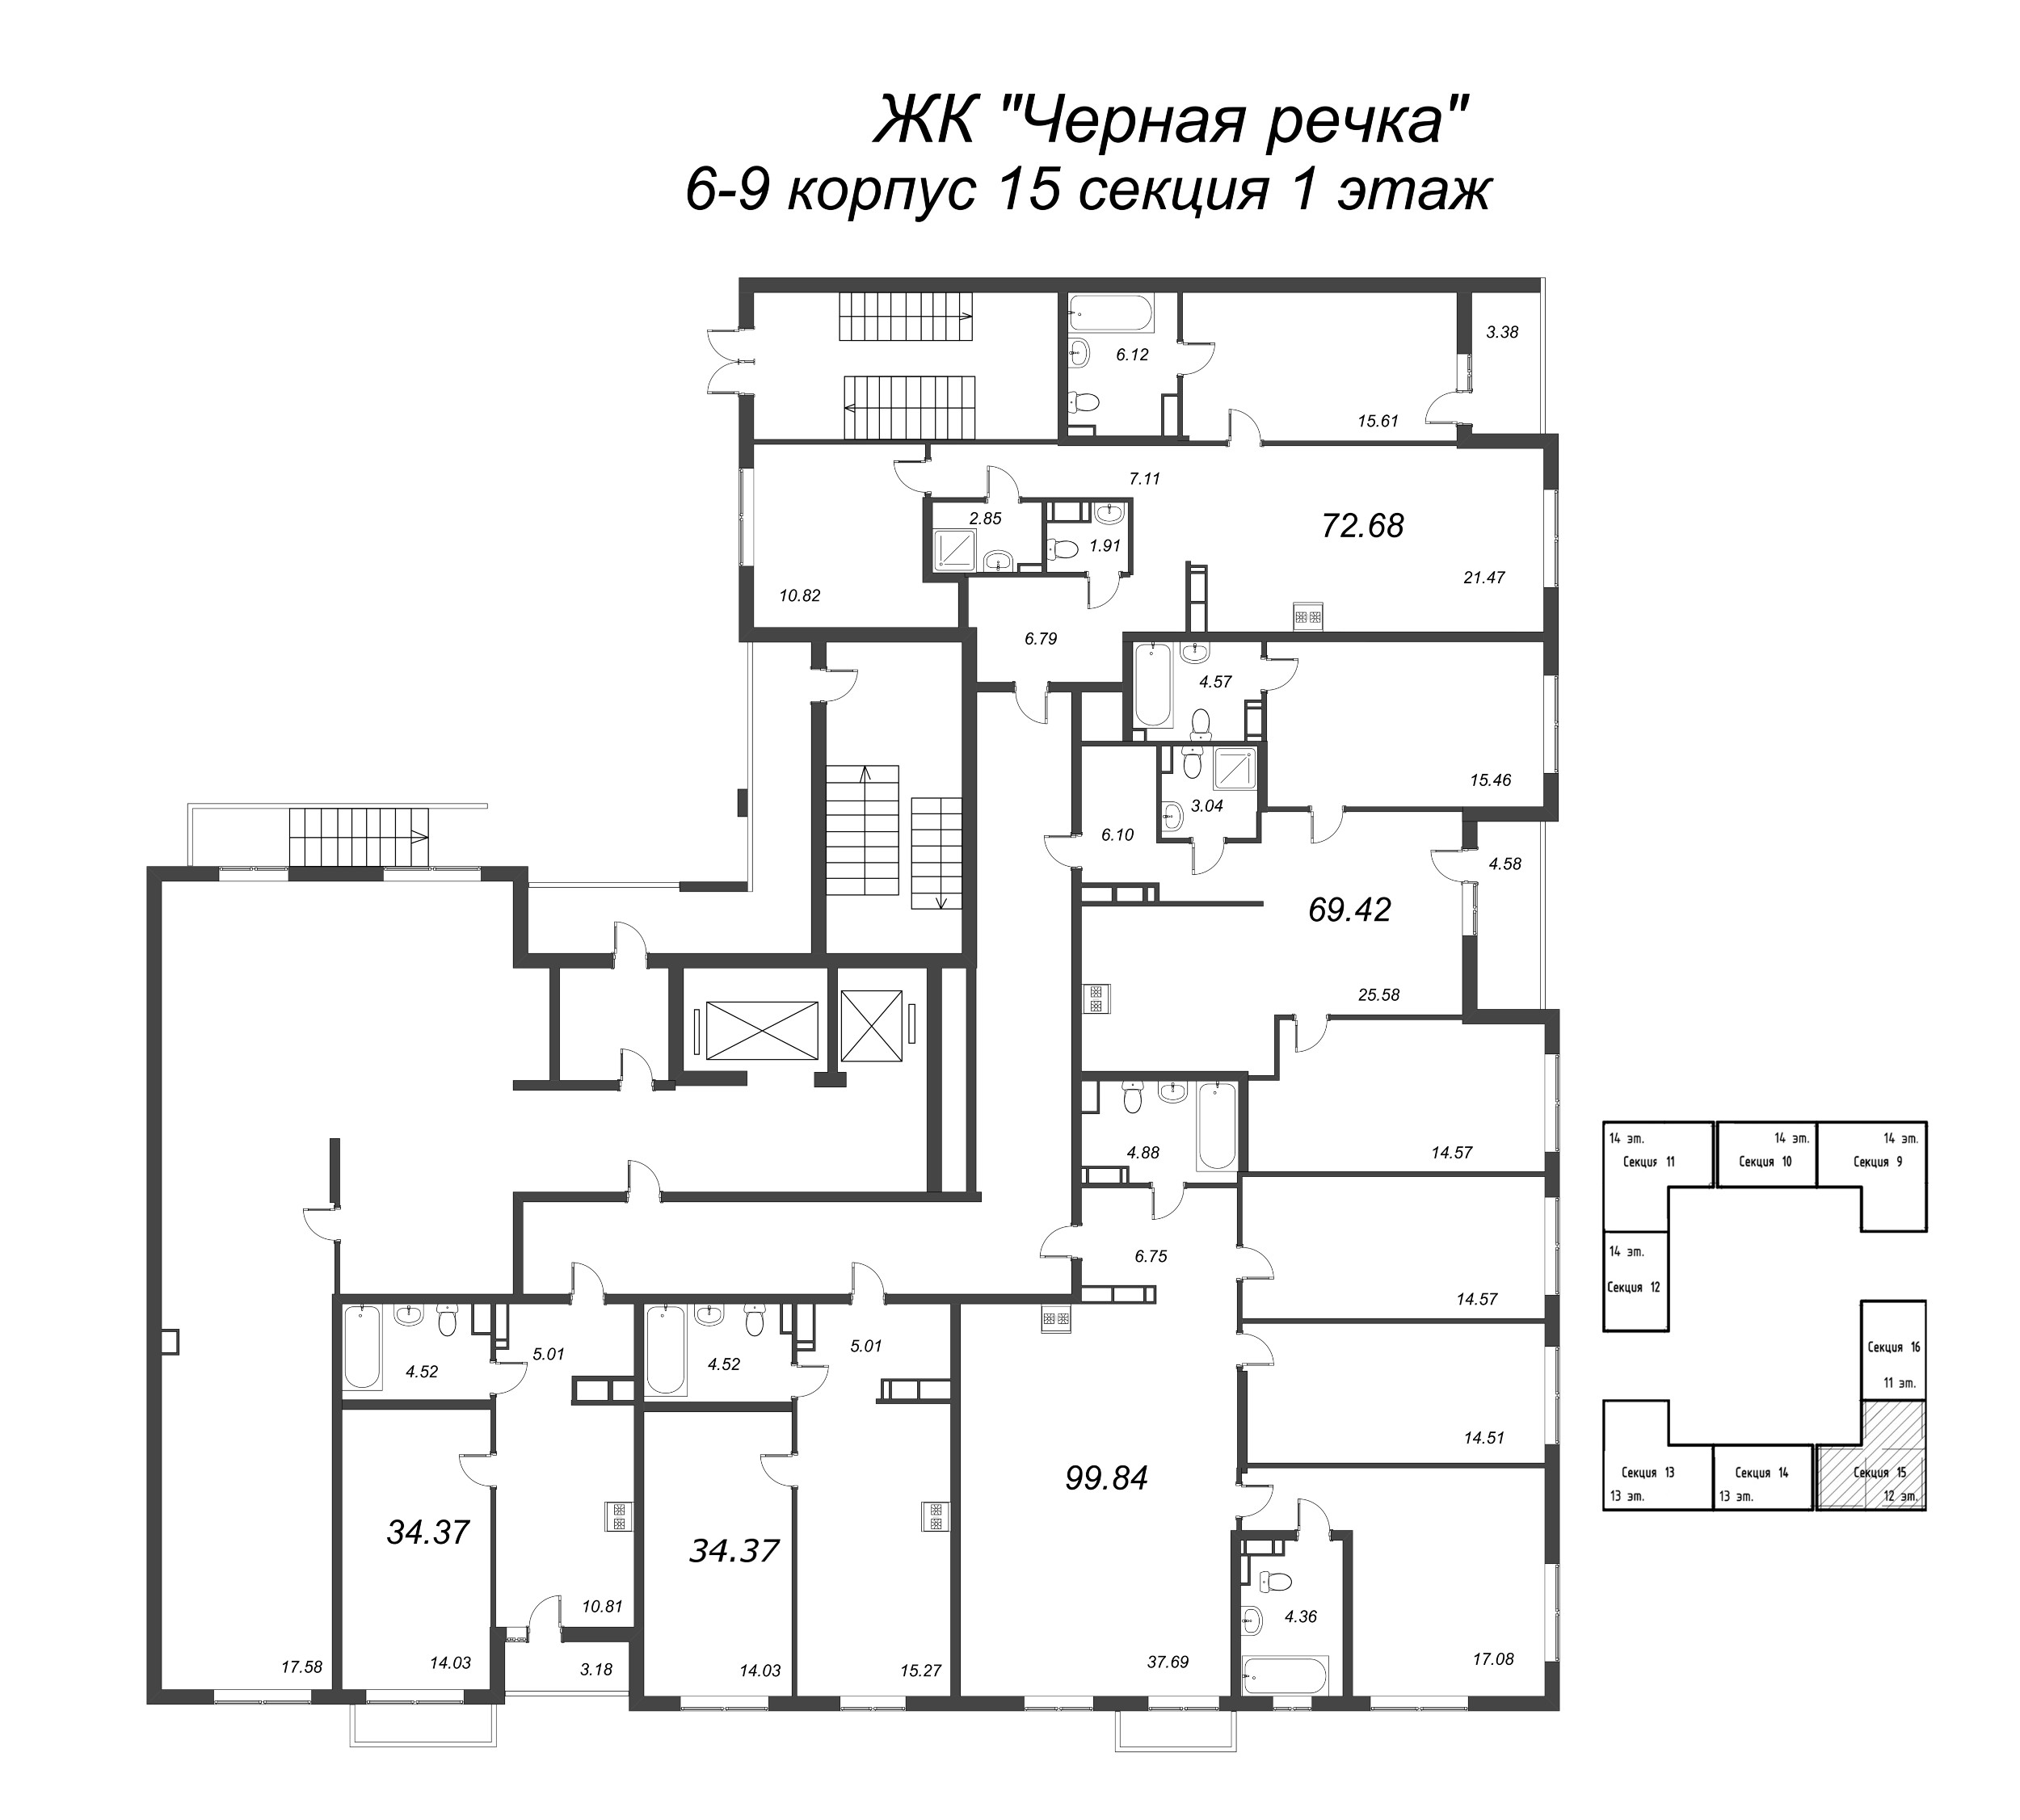 1-комнатная квартира, 34.37 м² в ЖК "Чёрная речка" - планировка этажа